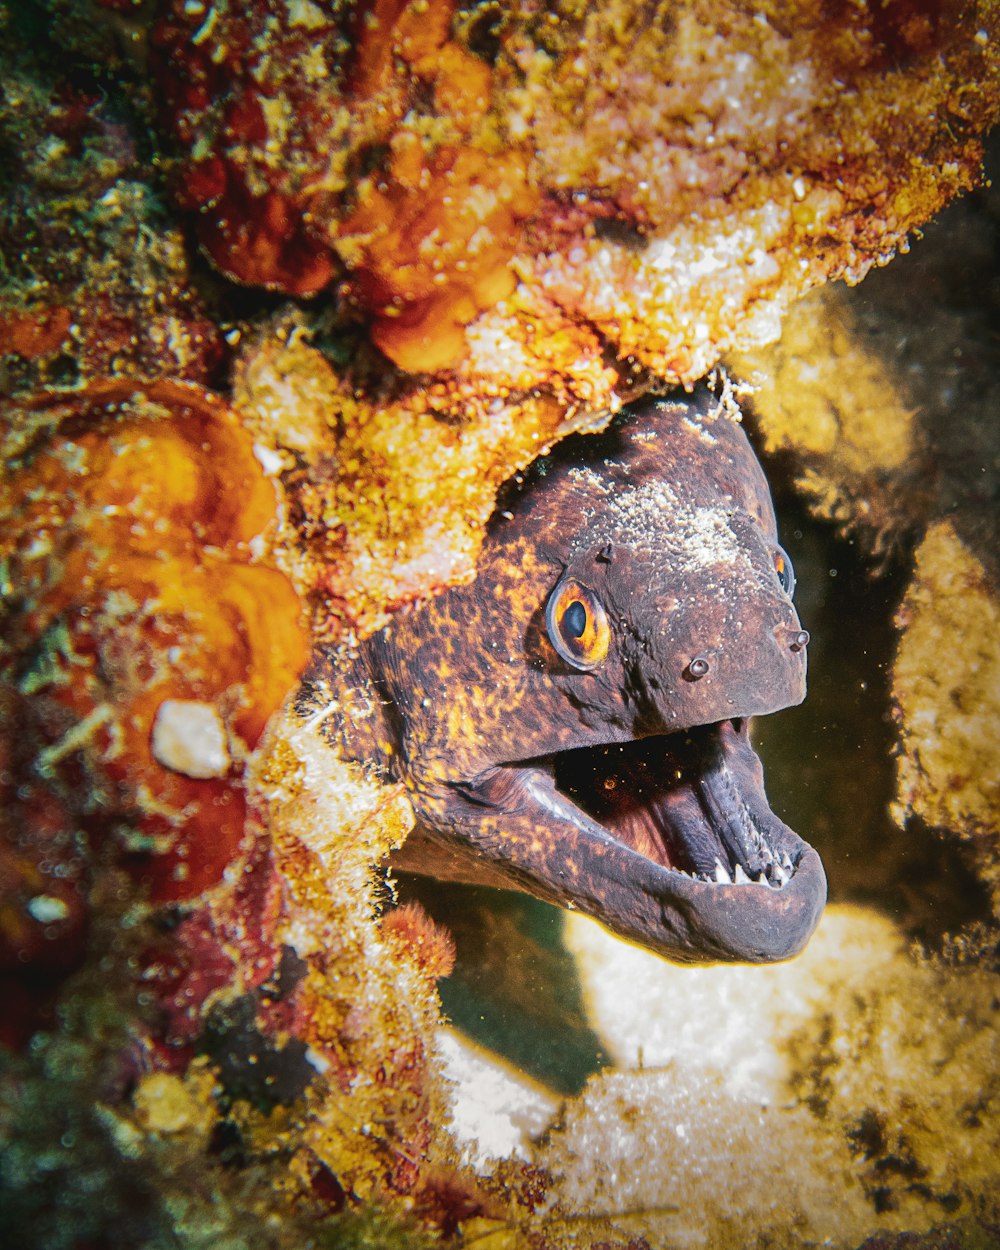 um close up de um peixe com a boca aberta